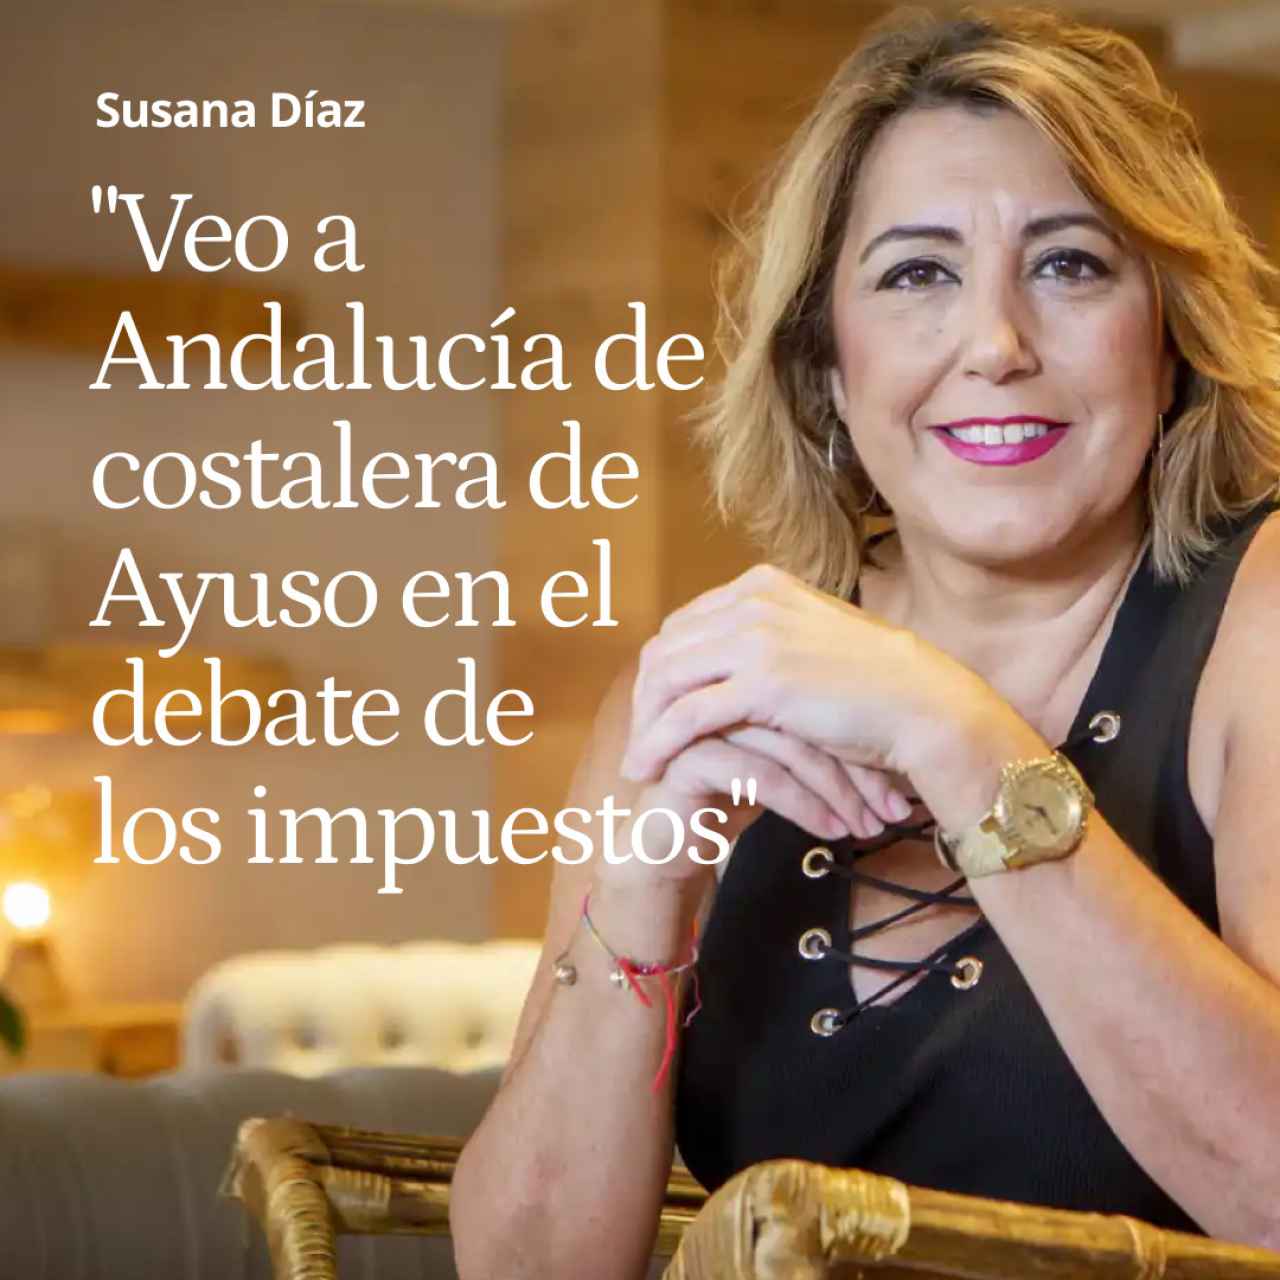 Susana Díaz rompe su silencio:  "Veo a Andalucía de costalera de Ayuso en el debate de los impuestos"